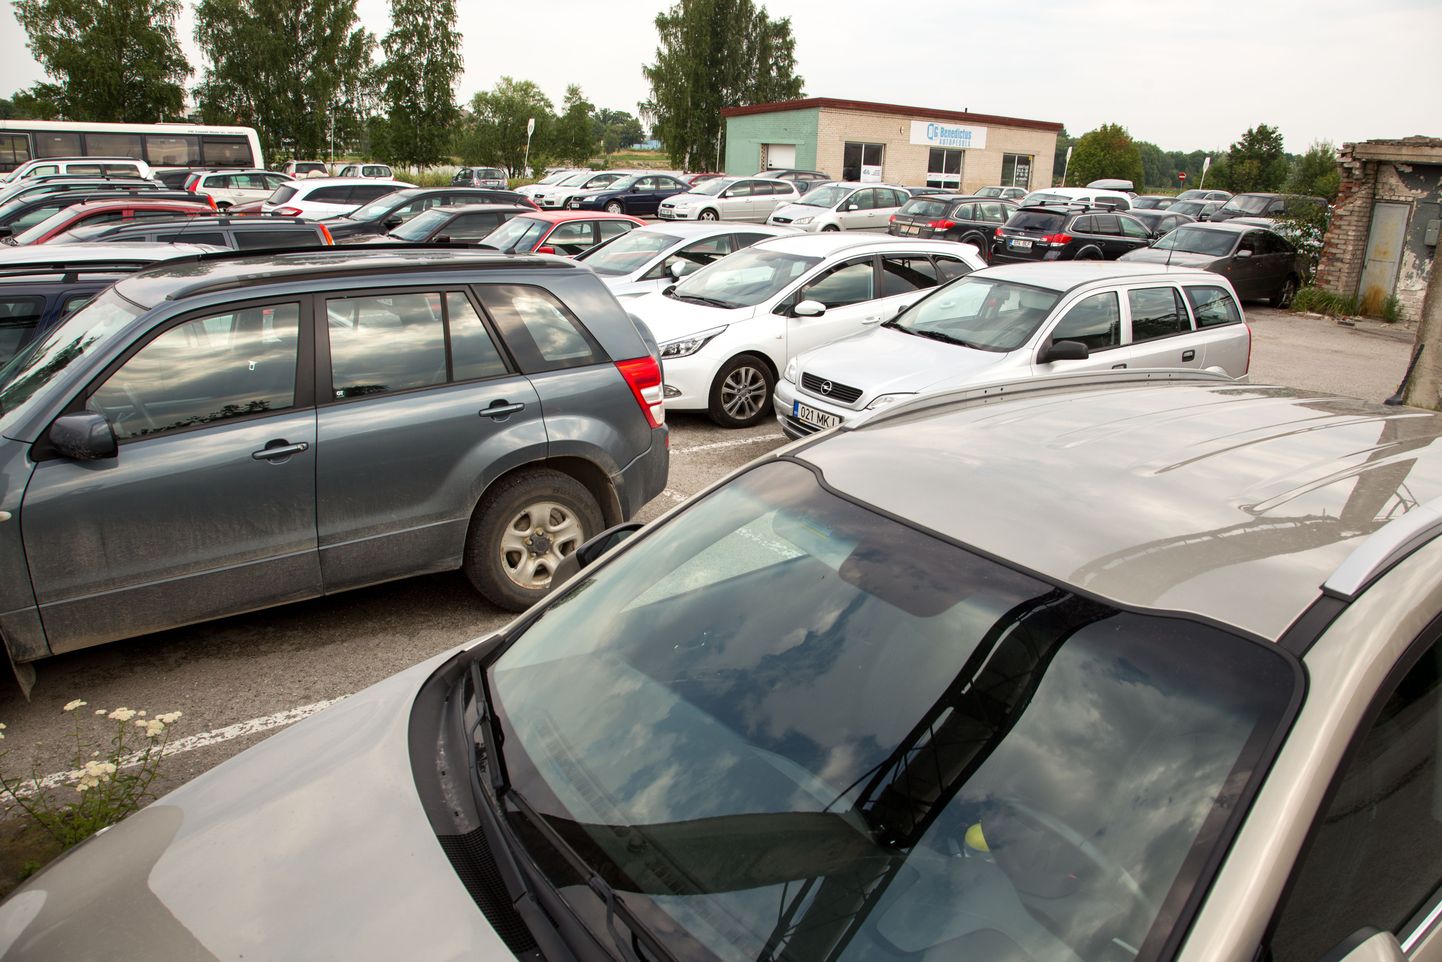 Festivali korraldate hinnangul on on tavapäraselt Pärnus parkimiskohti 5000 autole, Weekend Festival Baltic suurendab nõudlust 10 000 parkimiskoha järele.